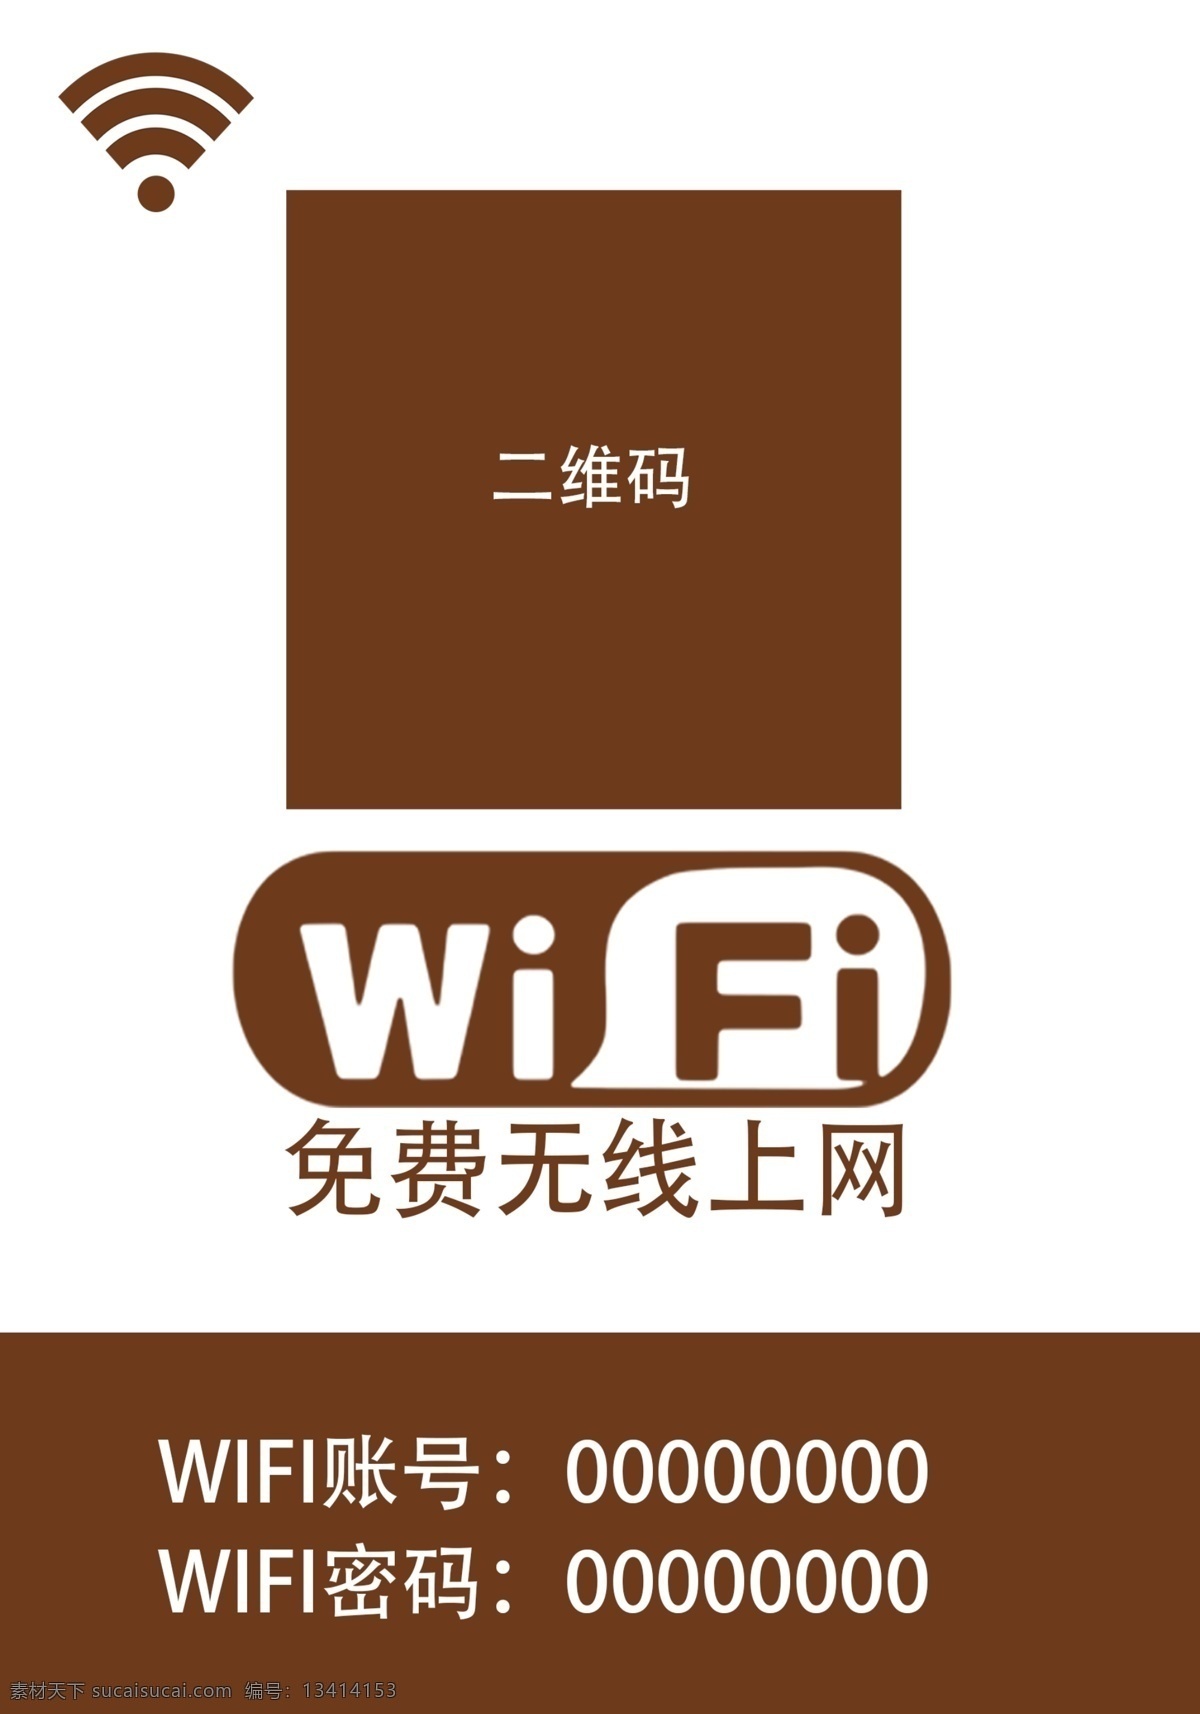 wifi wifi图标 wifi标志 wifi设计 小 图标 wifi网络 wifi图案 wifi图片 我的wifi wifi开放 免费wifi 网络 标志 账号 密码 医美海报